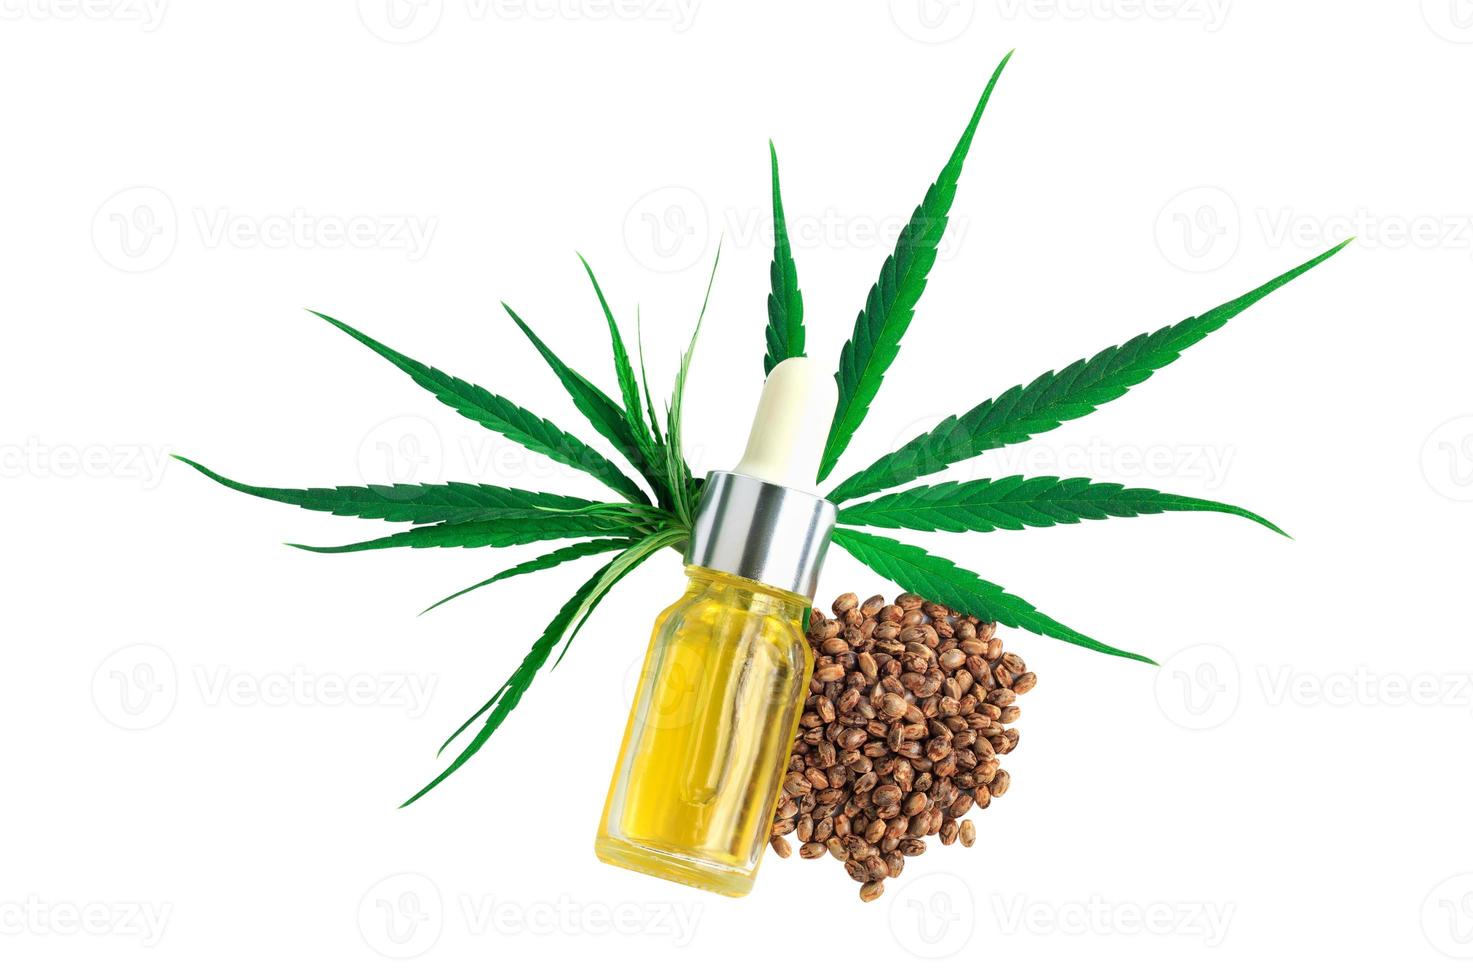 fles met hennepolie, hennepblad en zaden geïsoleerd op een witte achtergrond, CBD-olie hennepproducten, cannabisextractolie, medische marihuana. foto